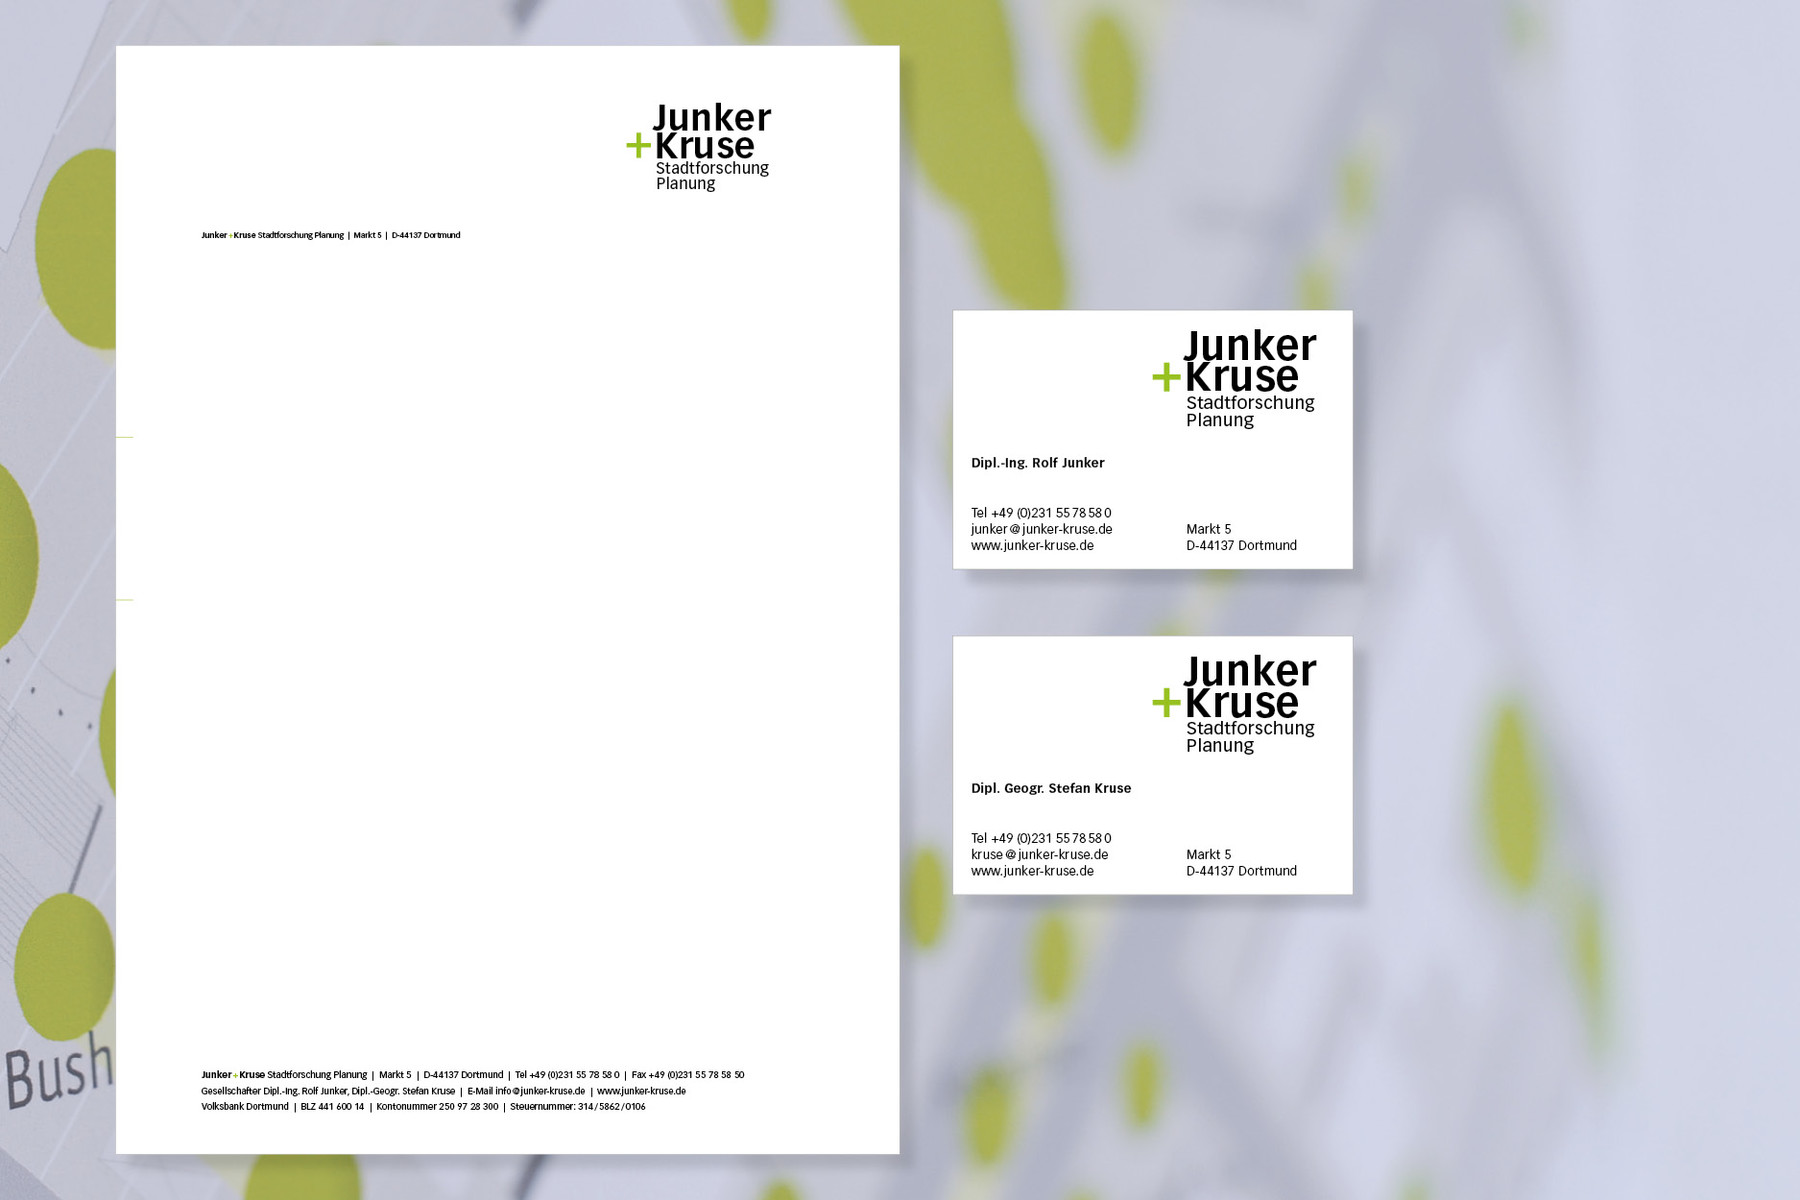 Junker und Kruse — Stadtforschung Planung